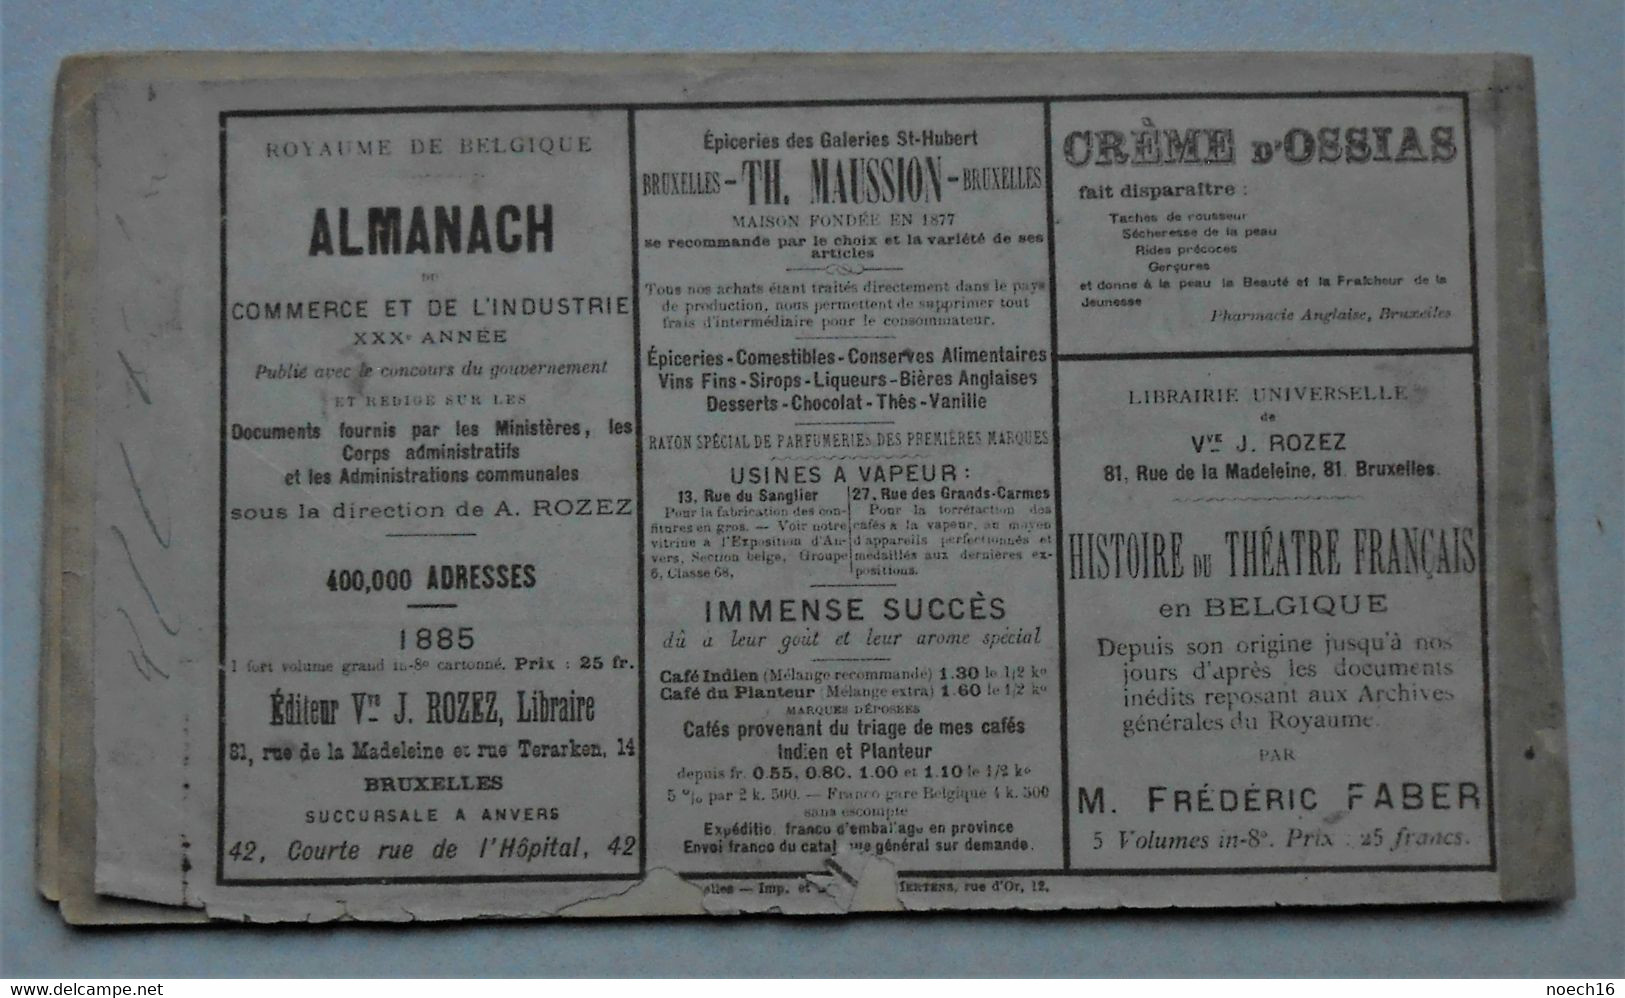 Catalogue publicité Bruxelles 1885 - Cortège Historique des Moyens de Transport